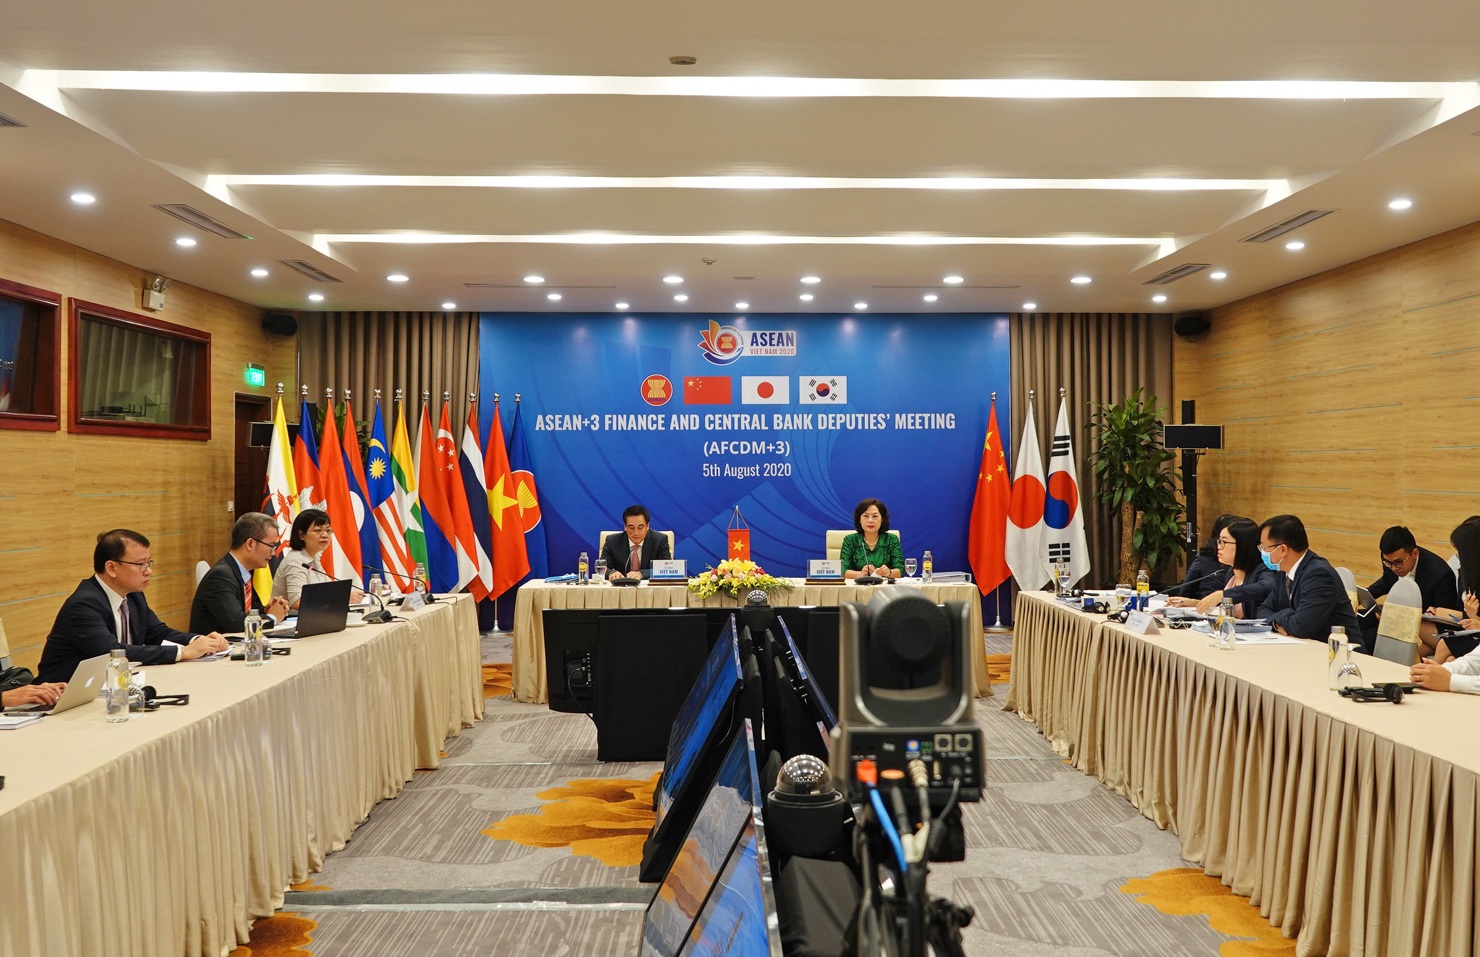 Hội nghị Thứ trưởng Tài chính và Phó Thống đốc Ngân hàng Trung ương ASEAN+3 là hội nghị quan trọng trong chuỗi các sự kiện hợp tác tài chính ASEAN và ASEAN+3 do Việt Nam chủ trì trong năm 2020.